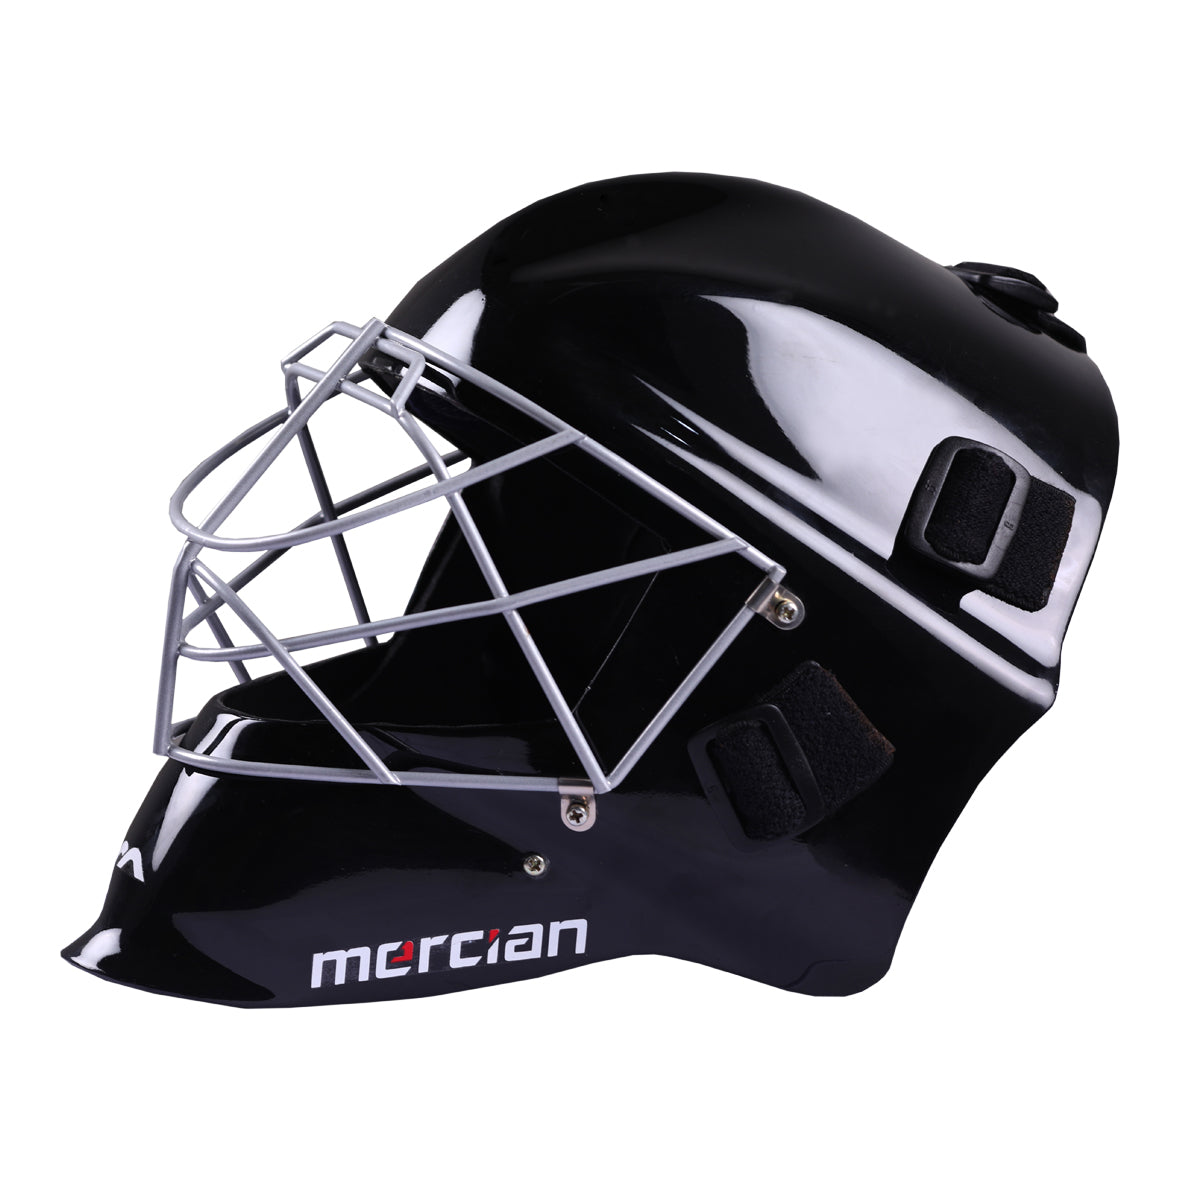 Mercian Field Hockey Helmet Black